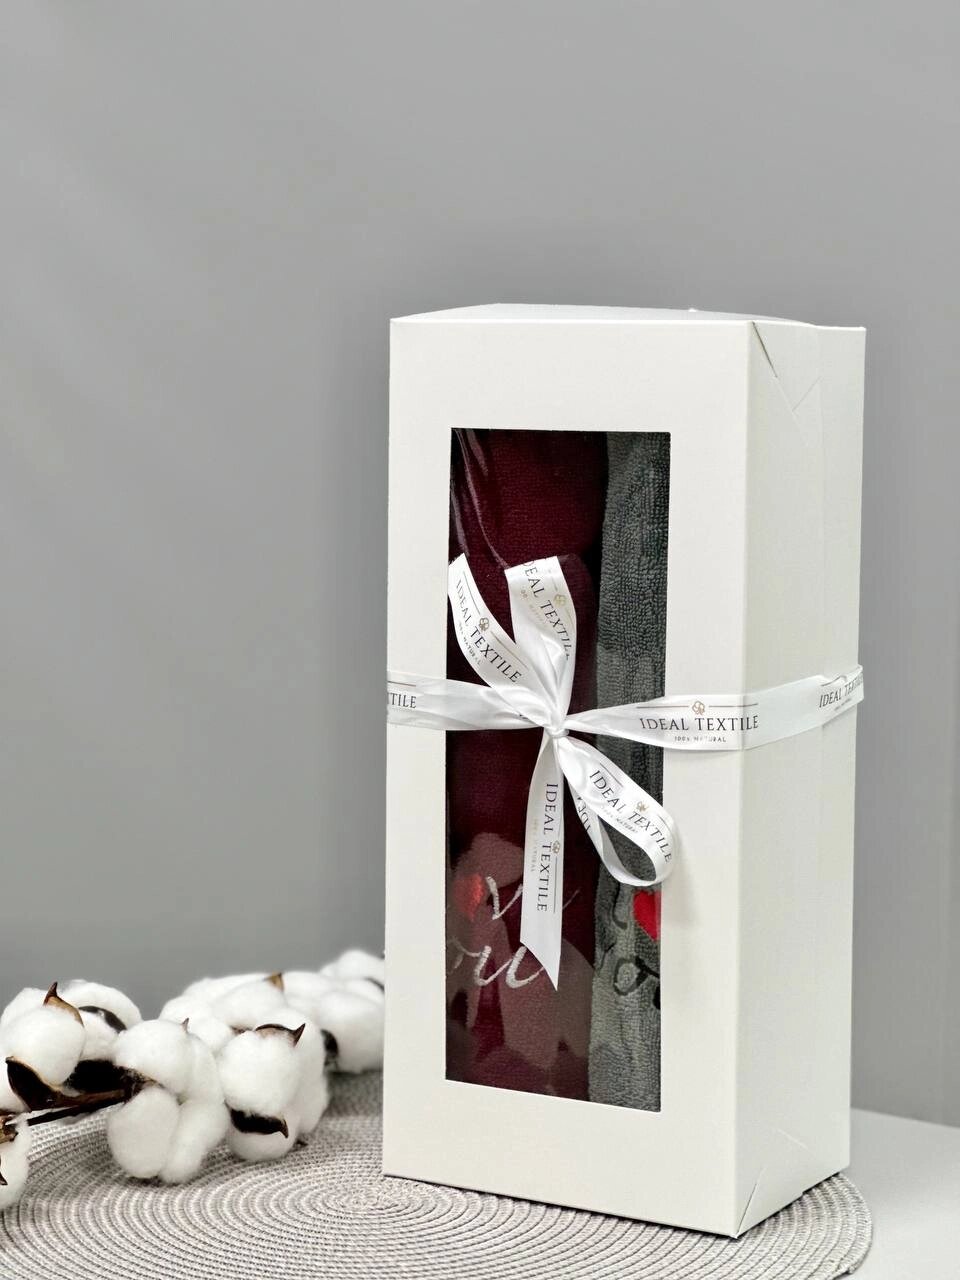 Подарунковий набір рушників "I Love You" 2 шт. від компанії IDEAL TEXTILE: махрові рушники, халати, постільна білизна - фото 1